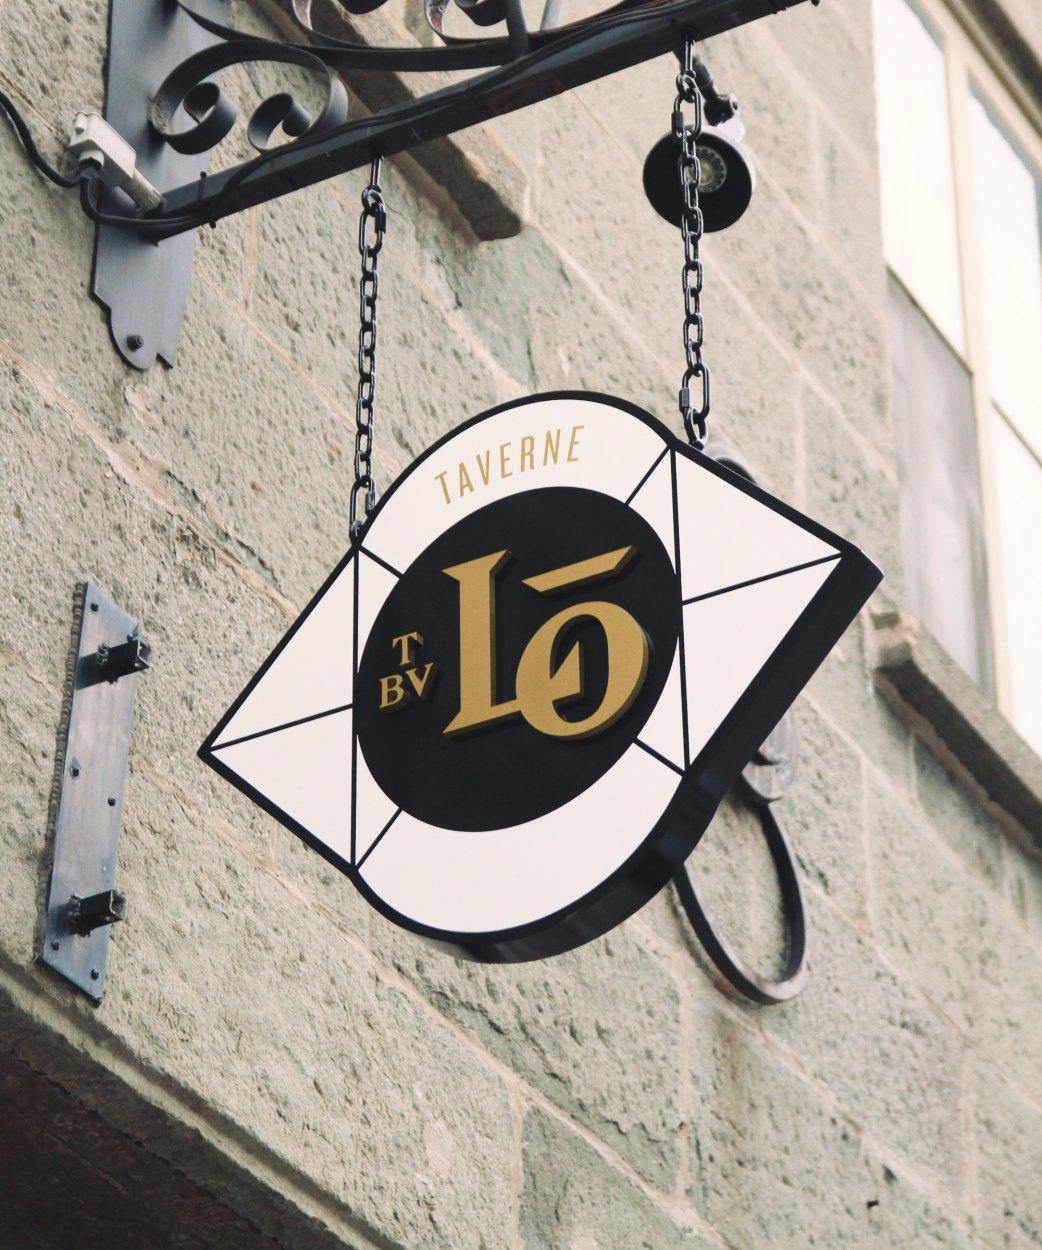 Louise Taverne & Bar à Vin - Restaurant Cuisine Créative Vieux-Port, Québec